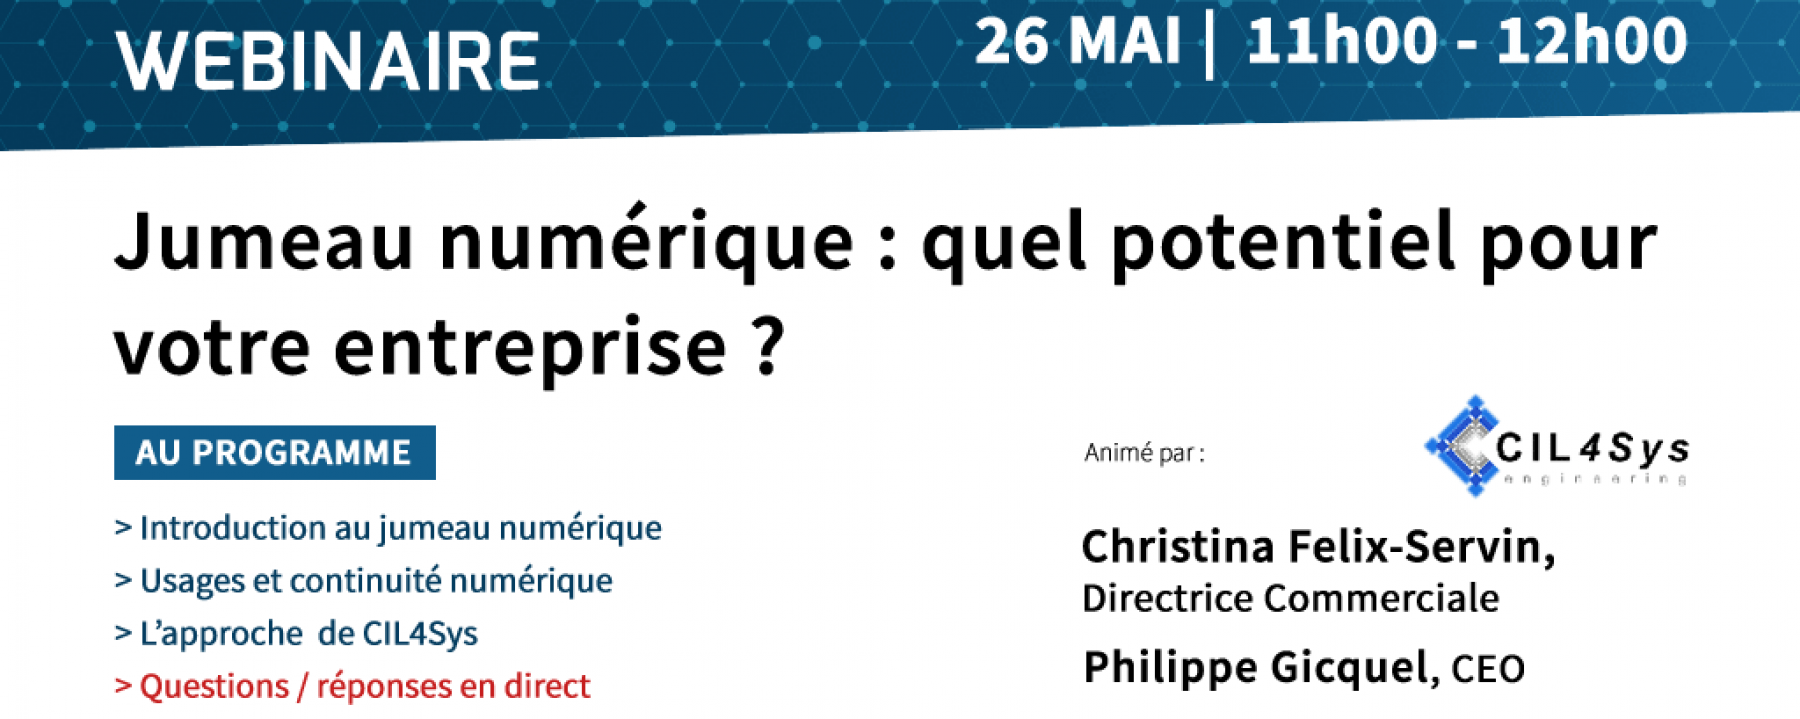 Webinar Jumeau numérique : quel potentiel pour votre entreprise ?, organisé par France Innovation, le 26 mai 2020